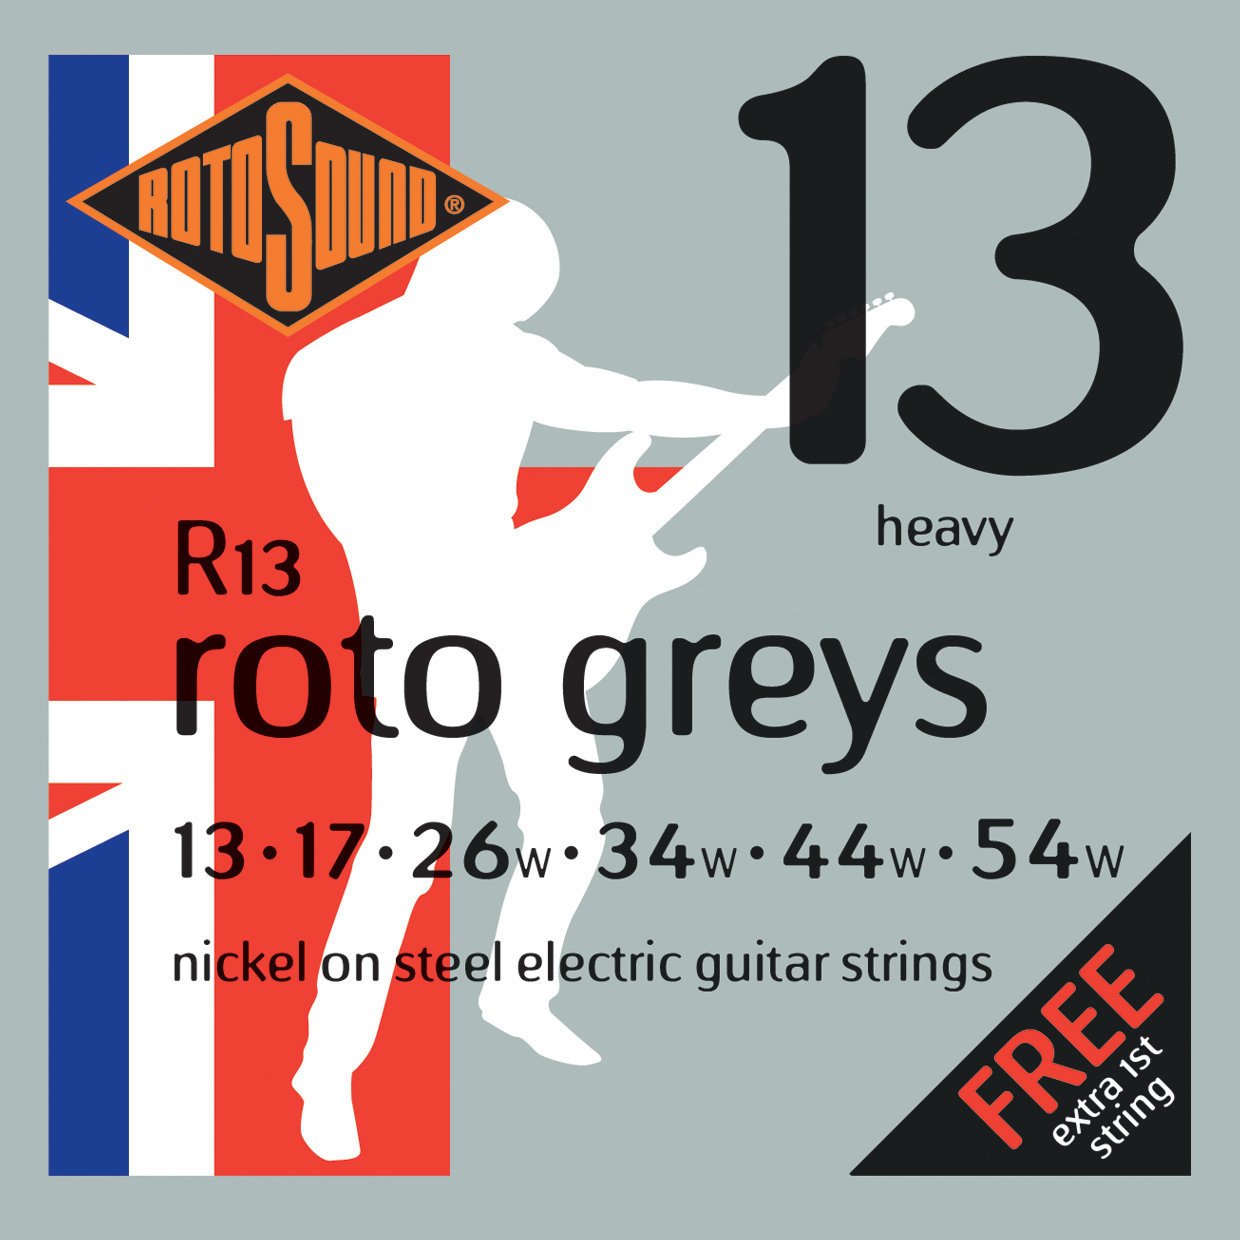 Struny pre elektrickú gitaru Rotosound R13